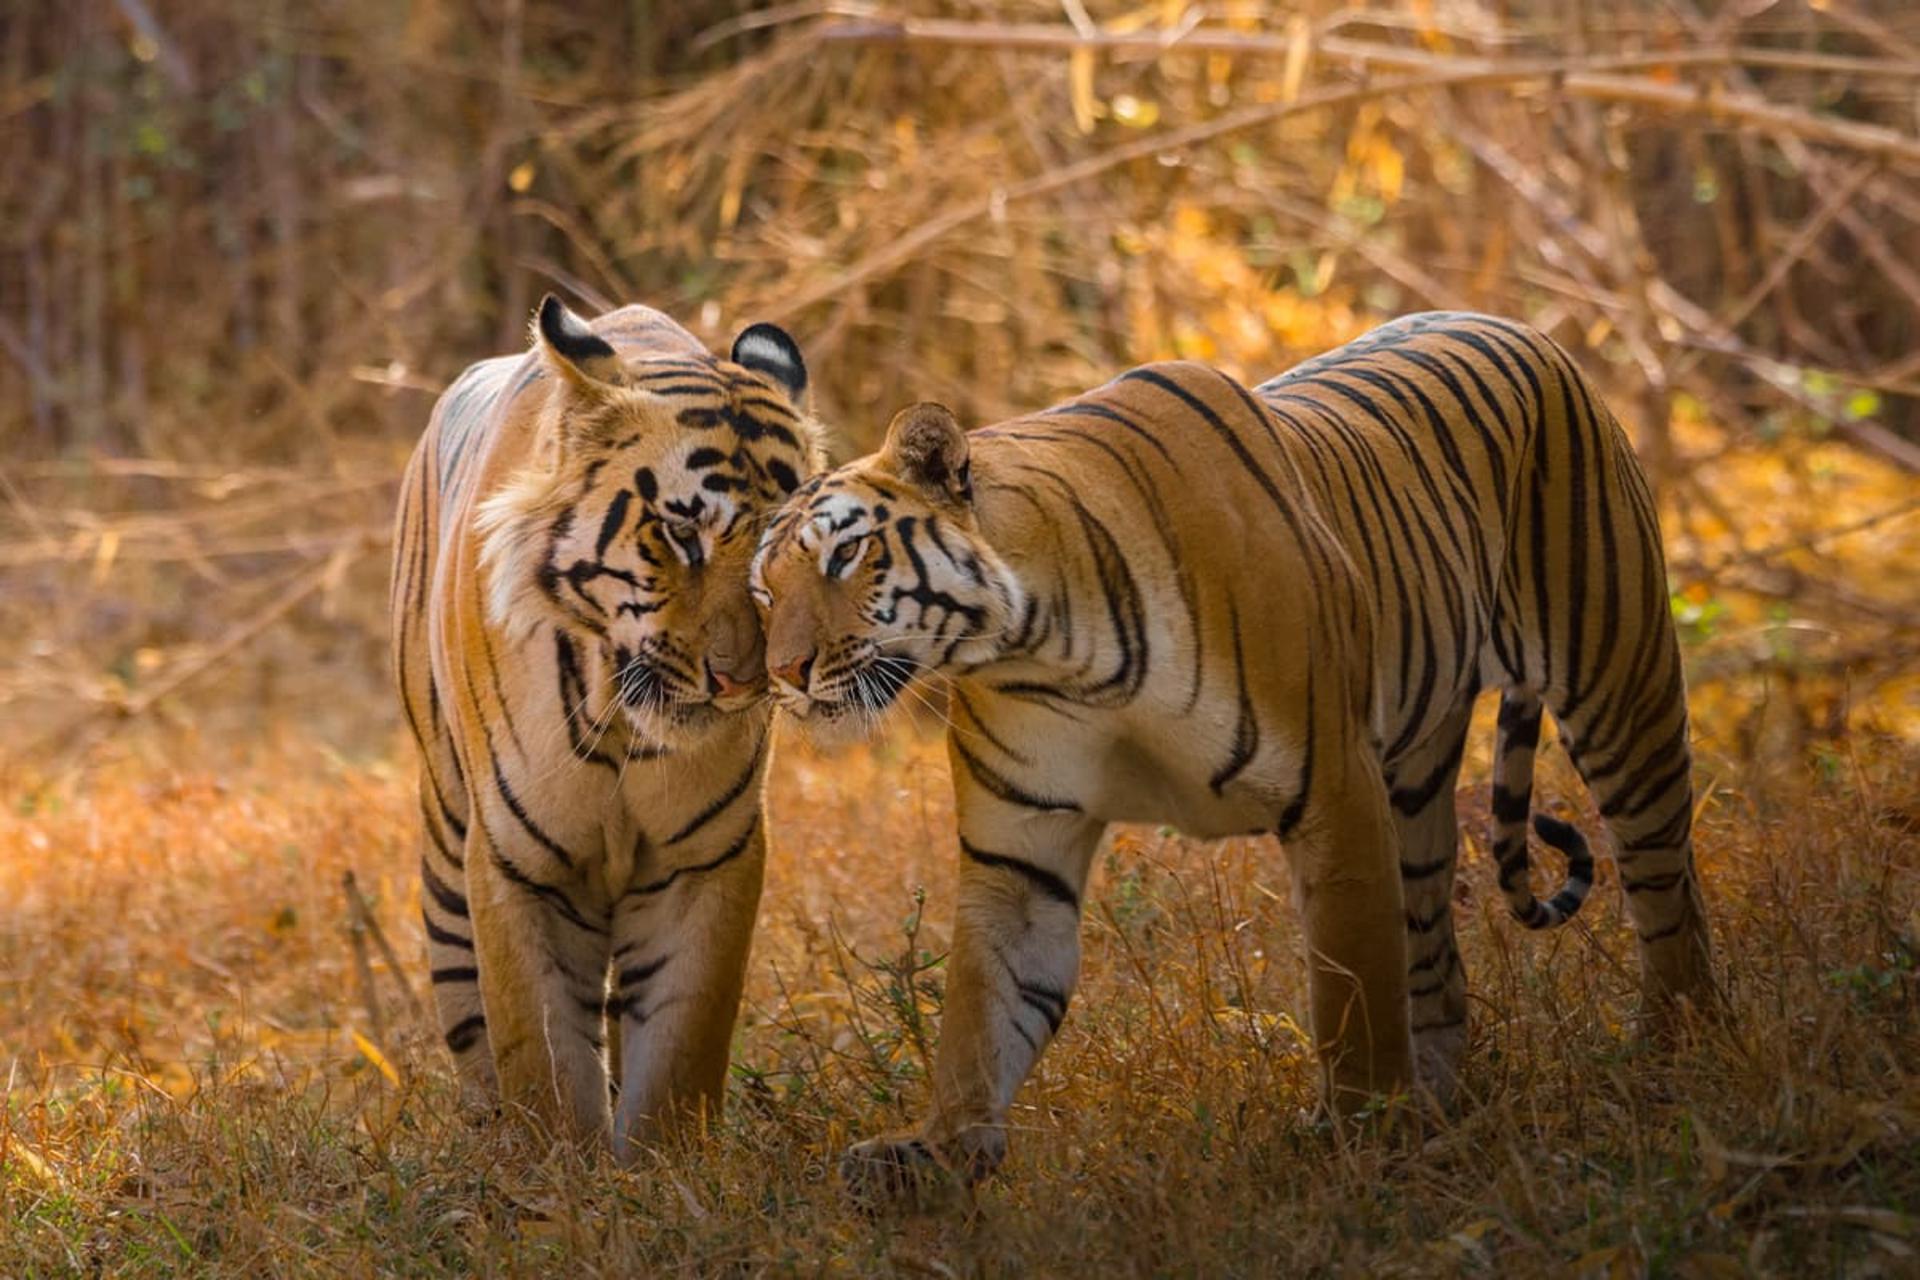 دو ببر بنگال عاشق در حیات وحش